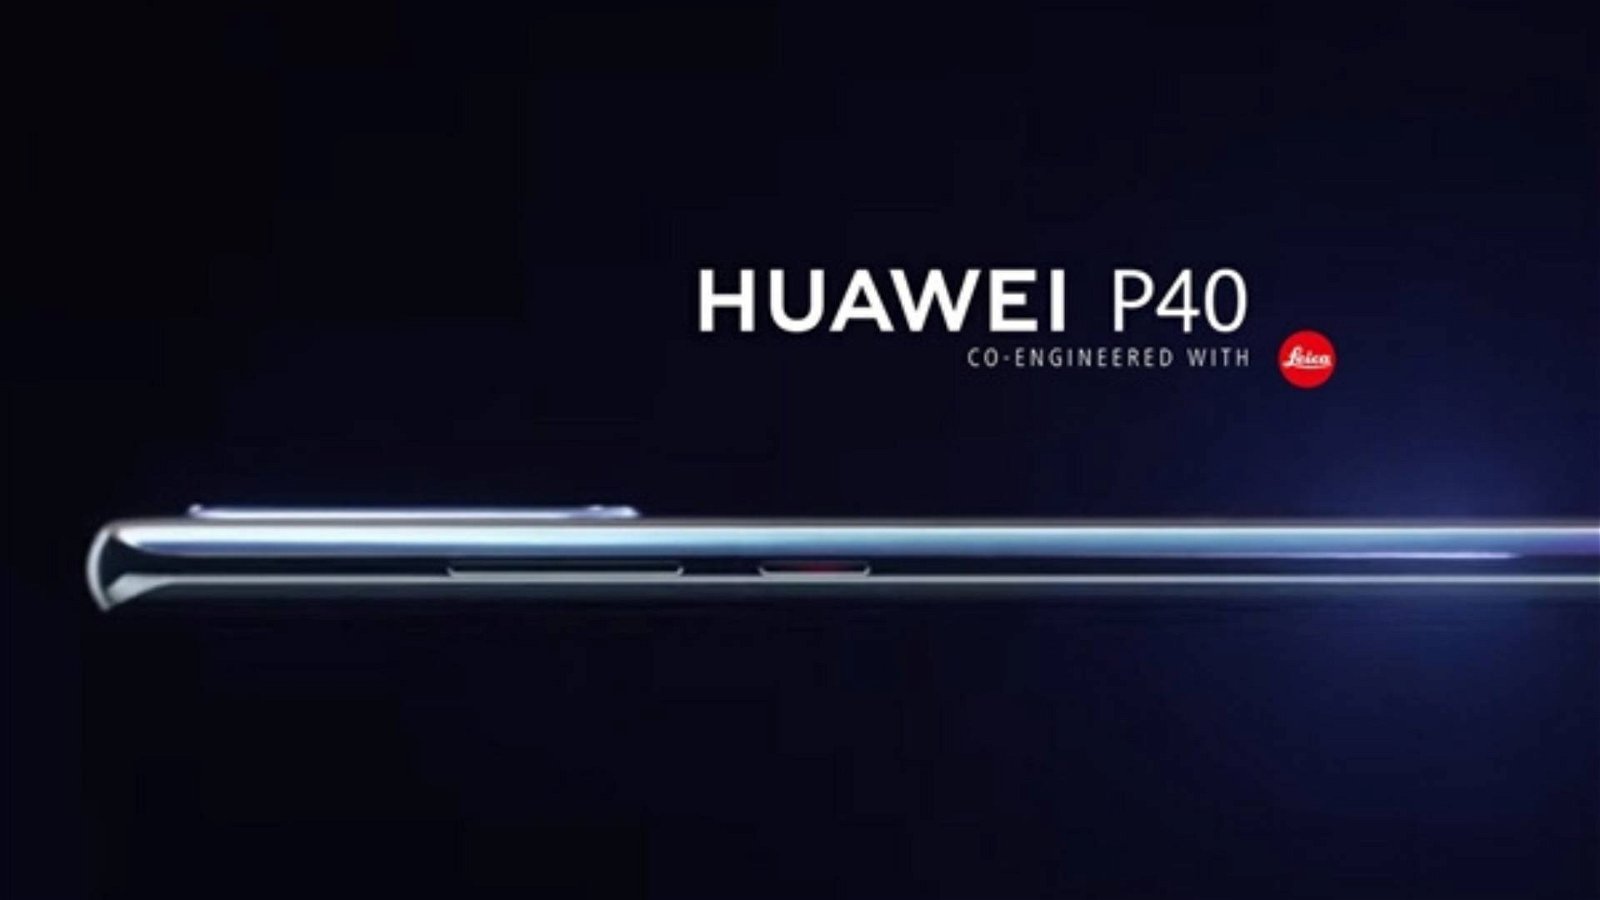 Immagine di Huawei P40 non avrà un sensore da 108 MP, bensì da 52 MP: ecco quali sono i vantaggi